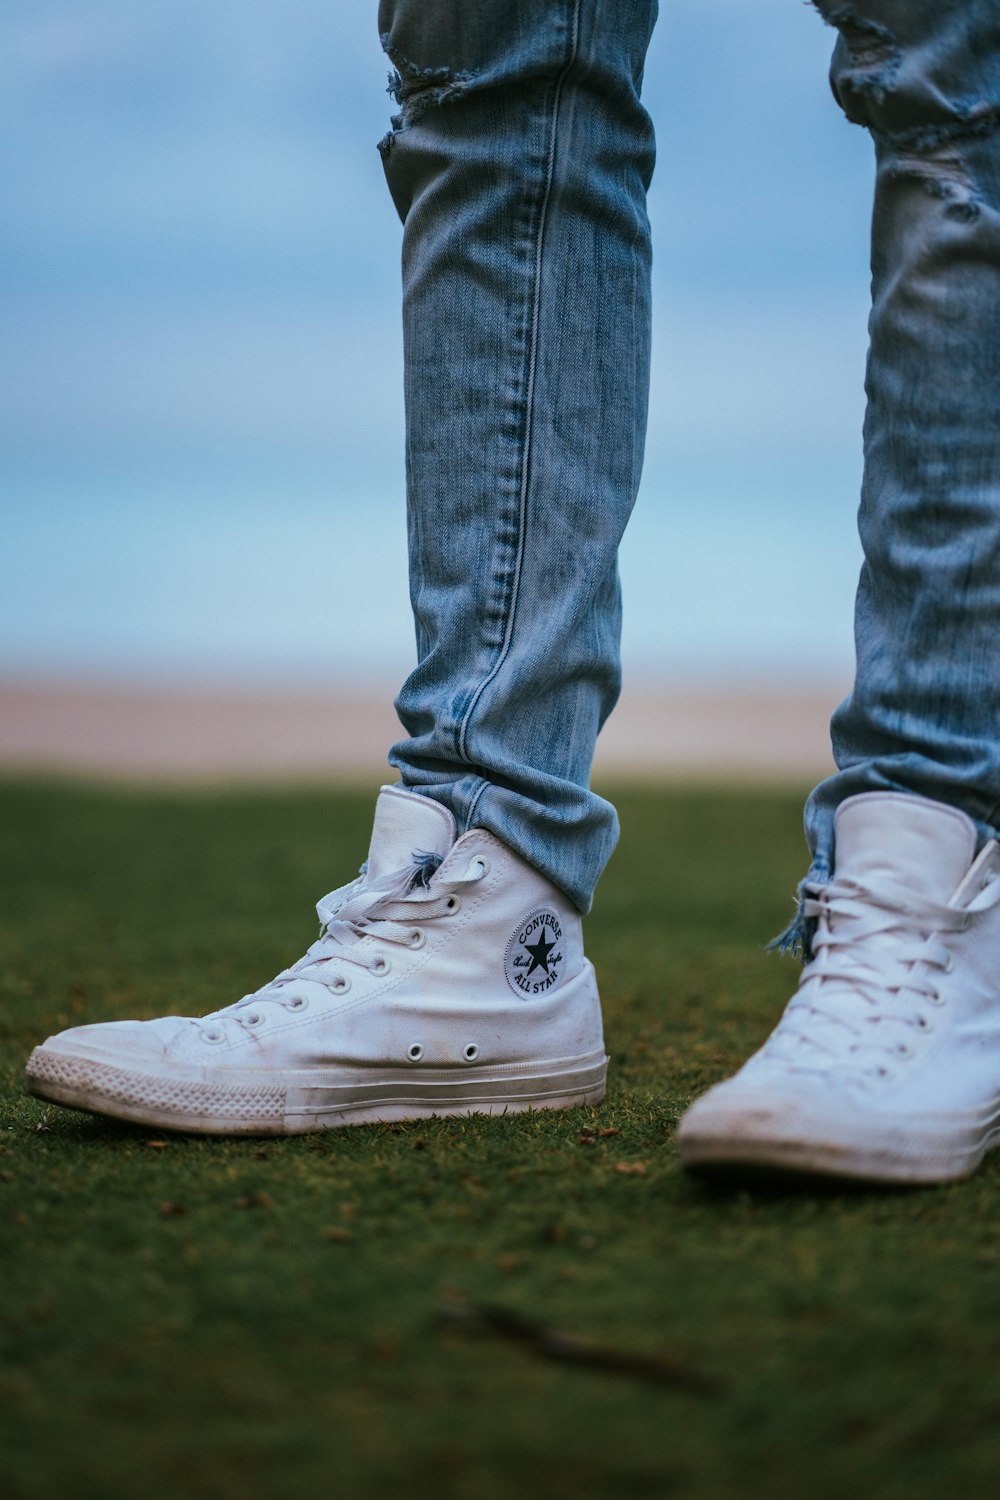 fecha límite Sangrar Como Foto Hombre vestido con zapatillas altas converse blancas – Imagen Florida  gratis en Unsplash